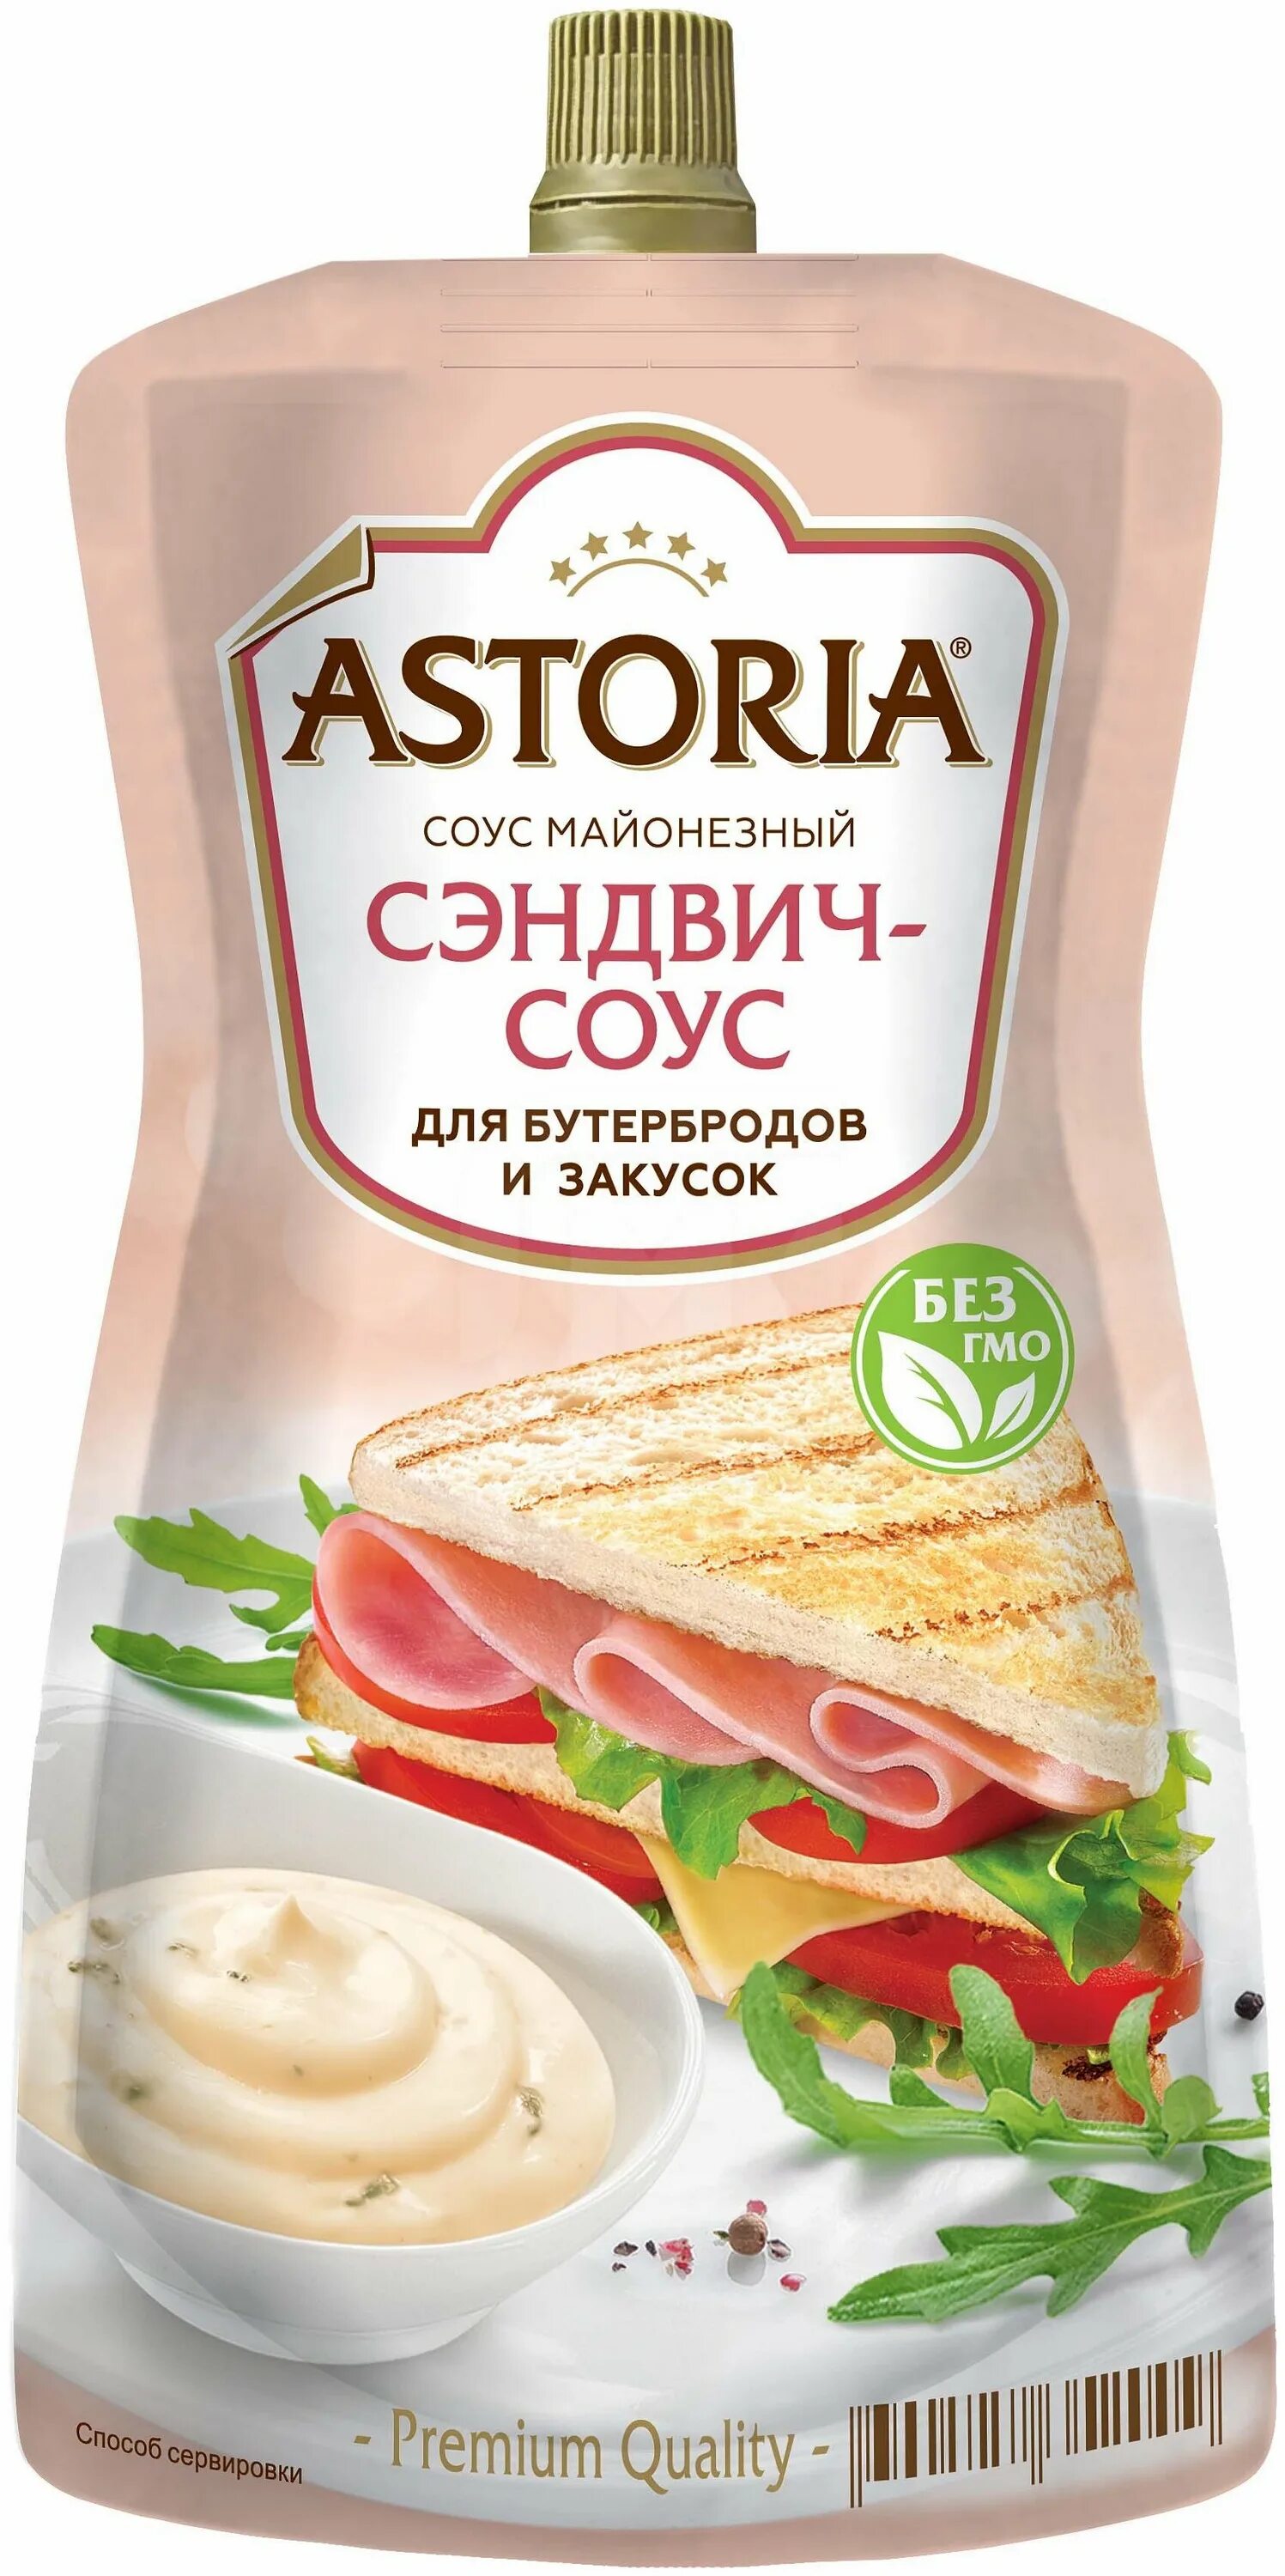 Соус астория купить. Соус майонезный Астория сэндвич-соус 200г. Соус майонезный Астория сэндвич 200 г. Сэндвич соус 30% 200 гр Астория. Astoria сэндвич соус.